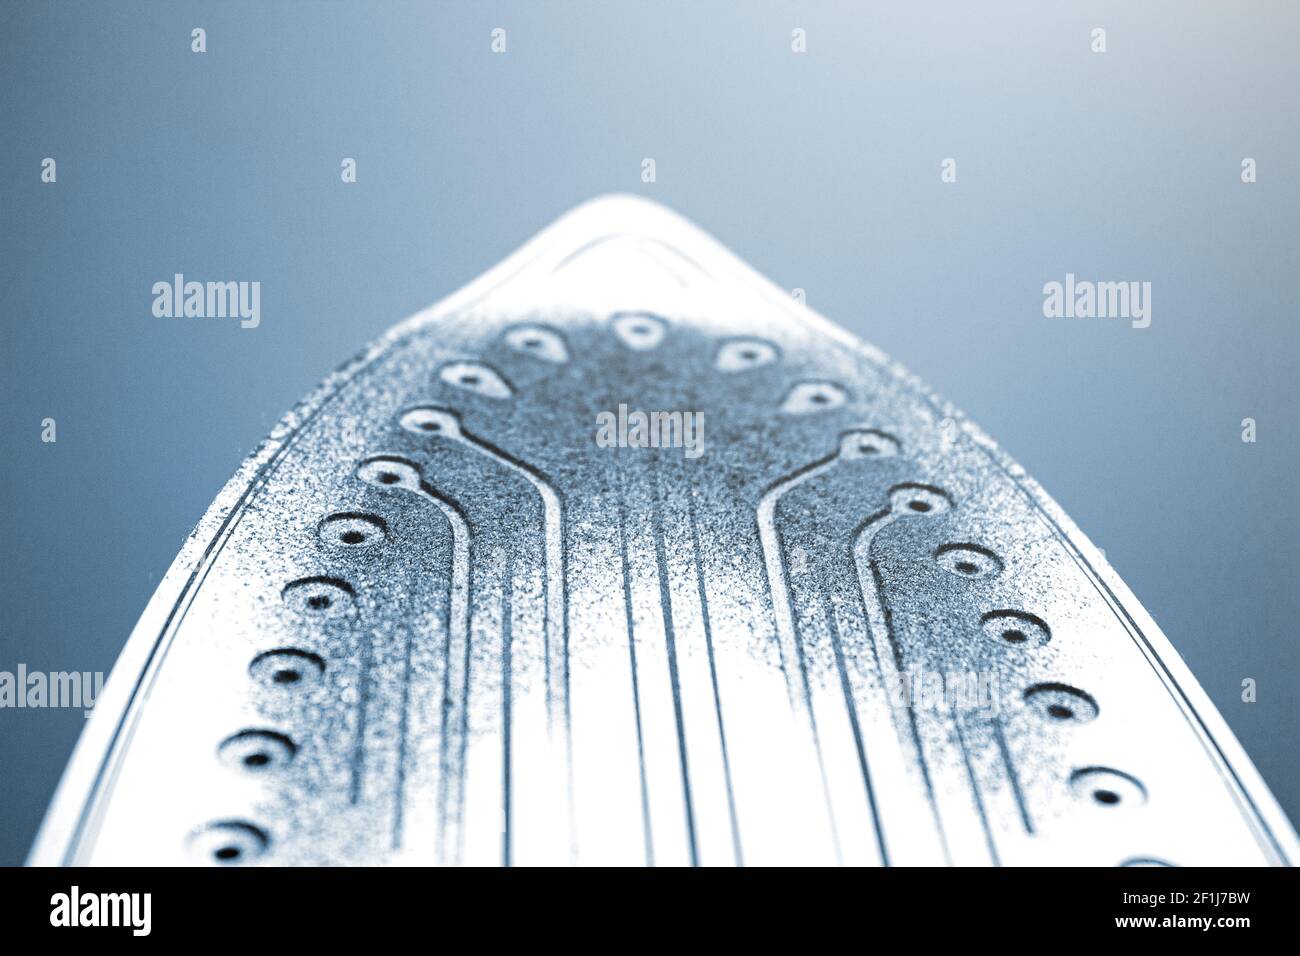 Tessuto fuso immagini e fotografie stock ad alta risoluzione - Alamy